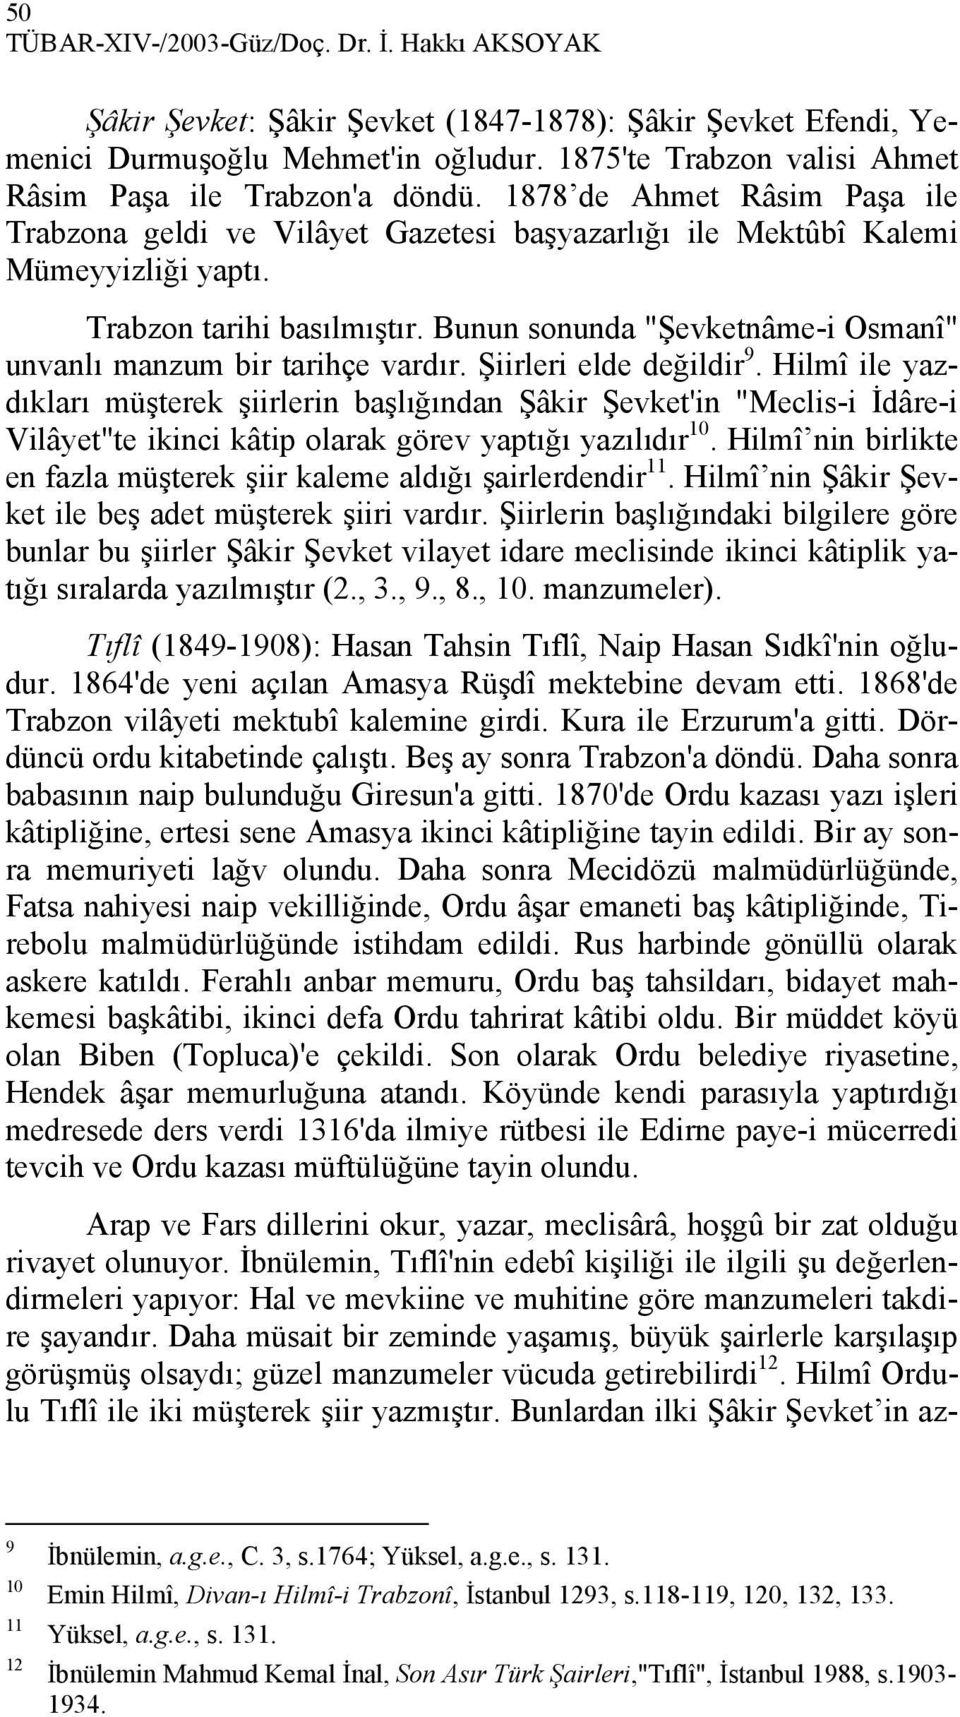 Trabzon tarihi basılmıştır. Bunun sonunda "Şevketnâme-i Osmanî" unvanlı manzum bir tarihçe vardır. Şiirleri elde değildir 9.